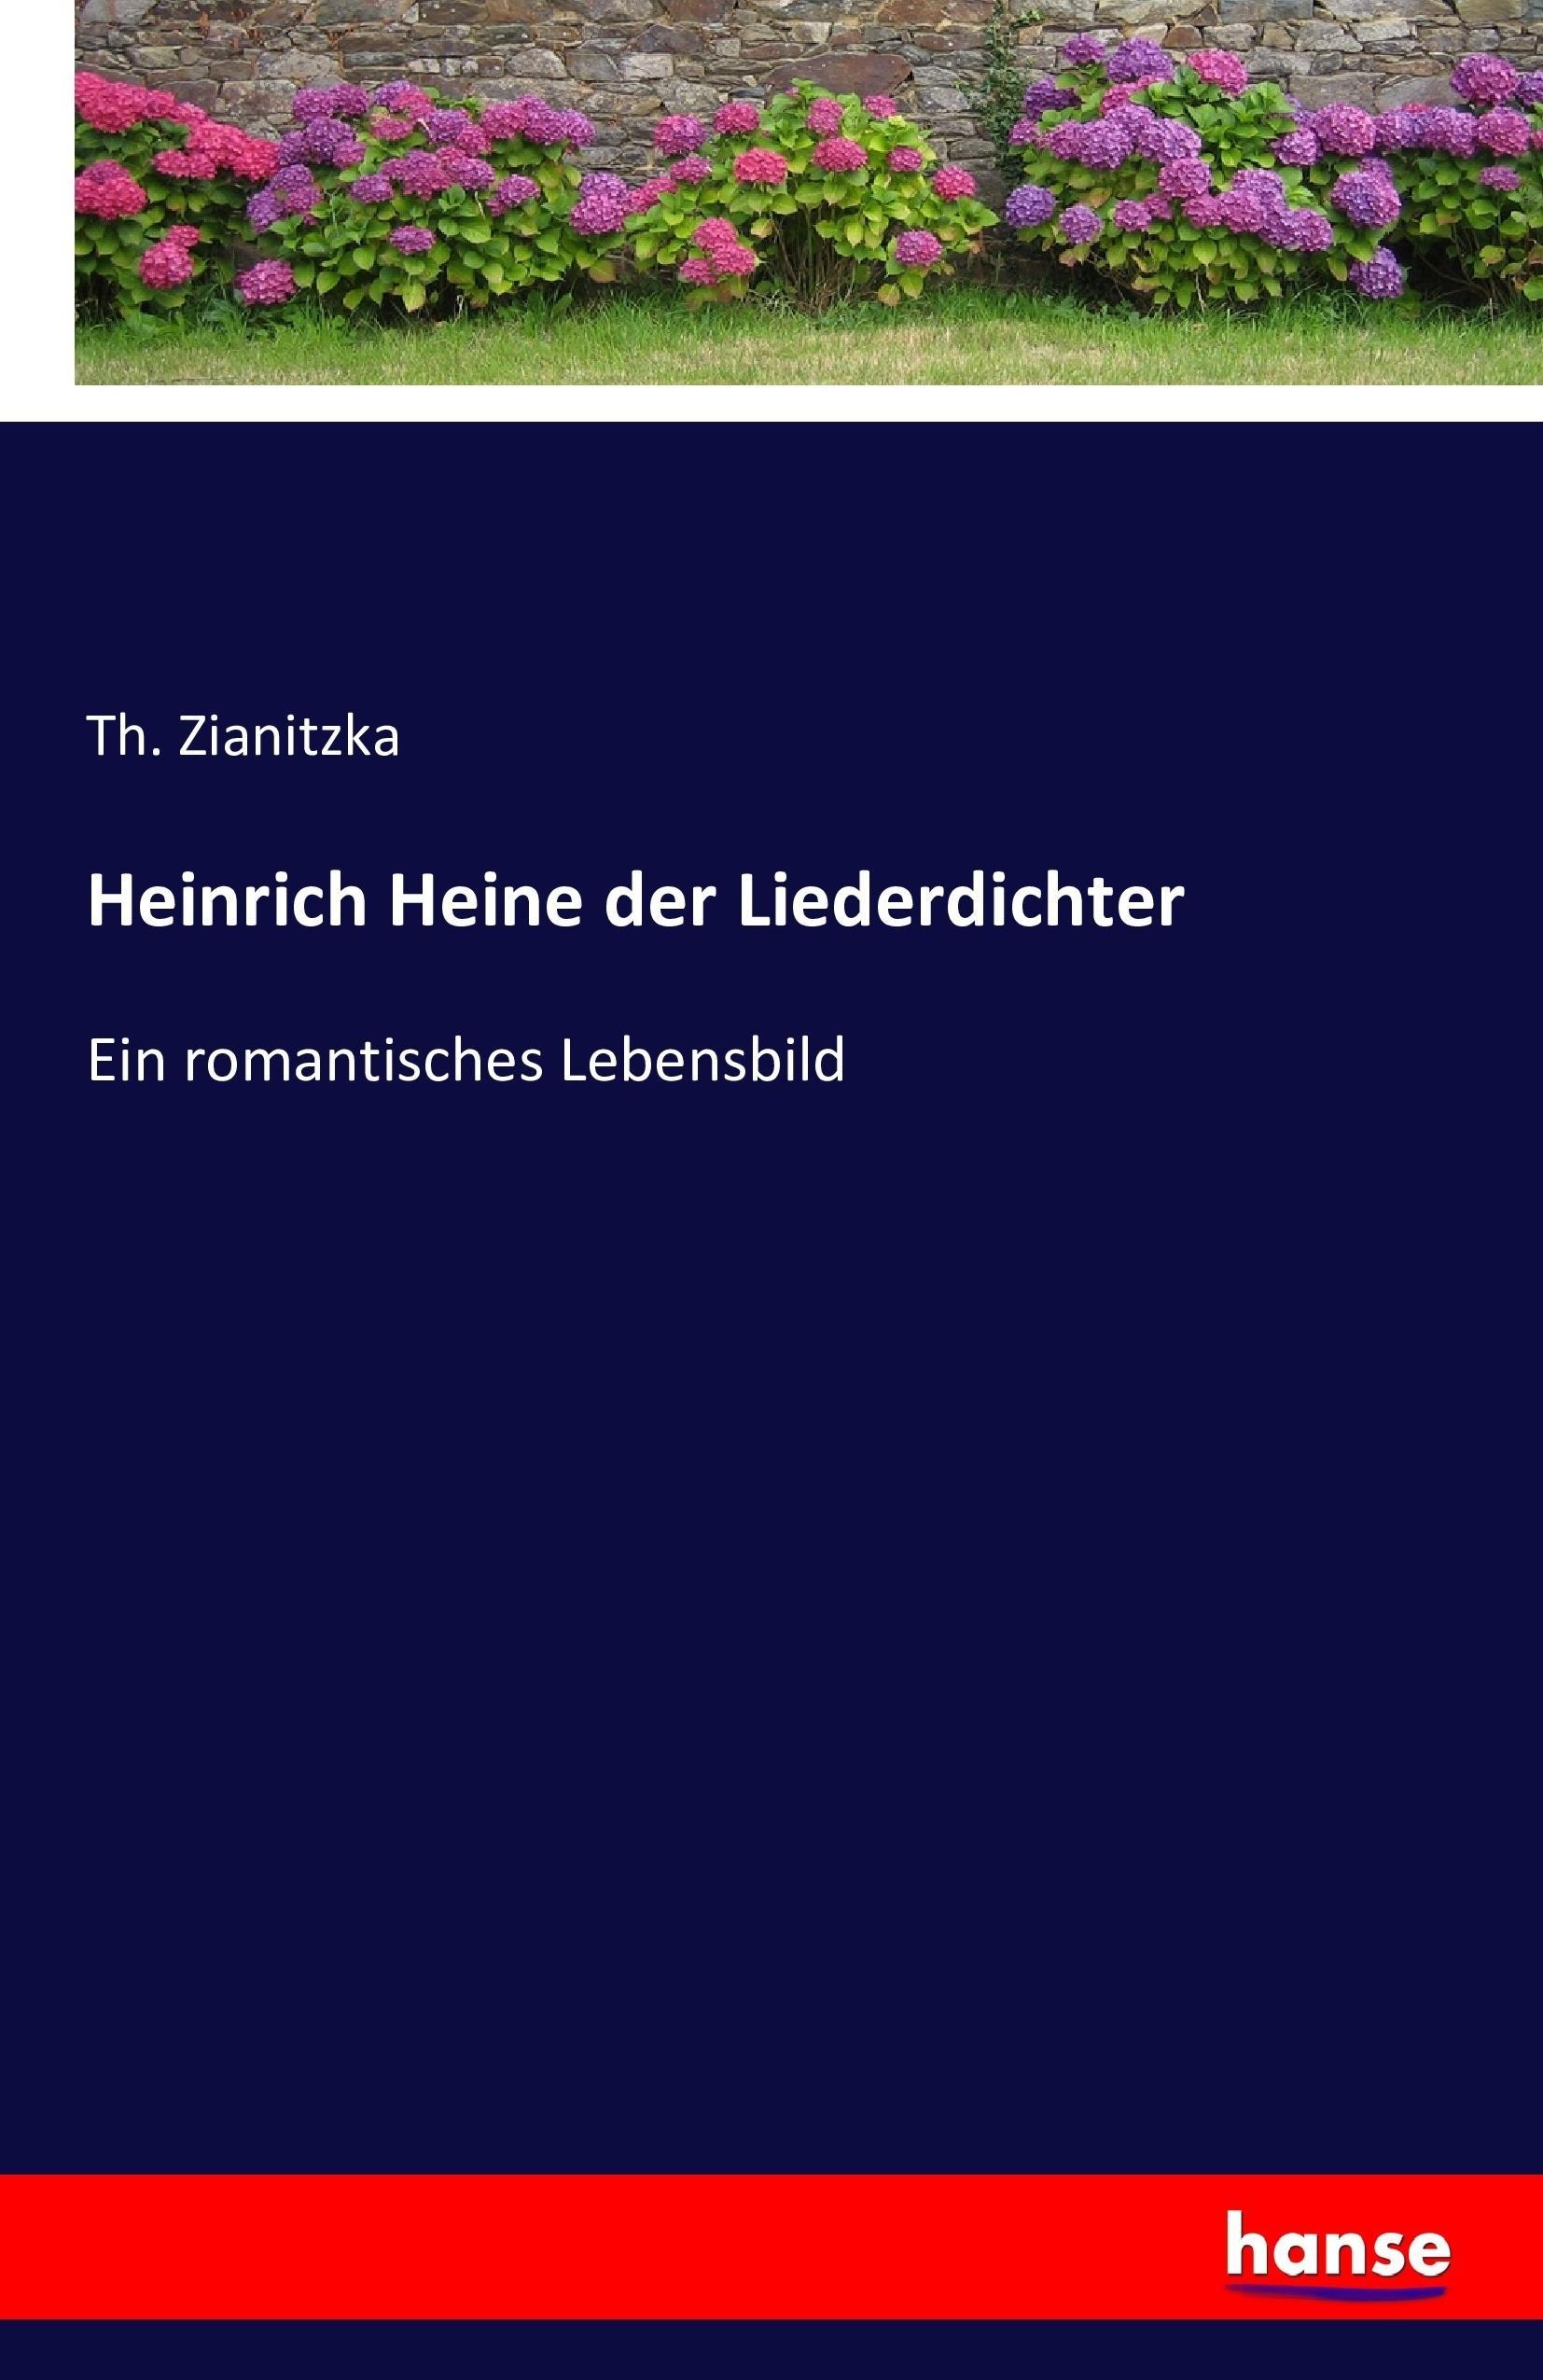 Heinrich Heine der Liederdichter | Ein romantisches Lebensbild | Th. Zianitzka | Taschenbuch | Paperback | 432 S. | Deutsch | 2016 | hansebooks | EAN 9783742863683 - Zianitzka, Th.